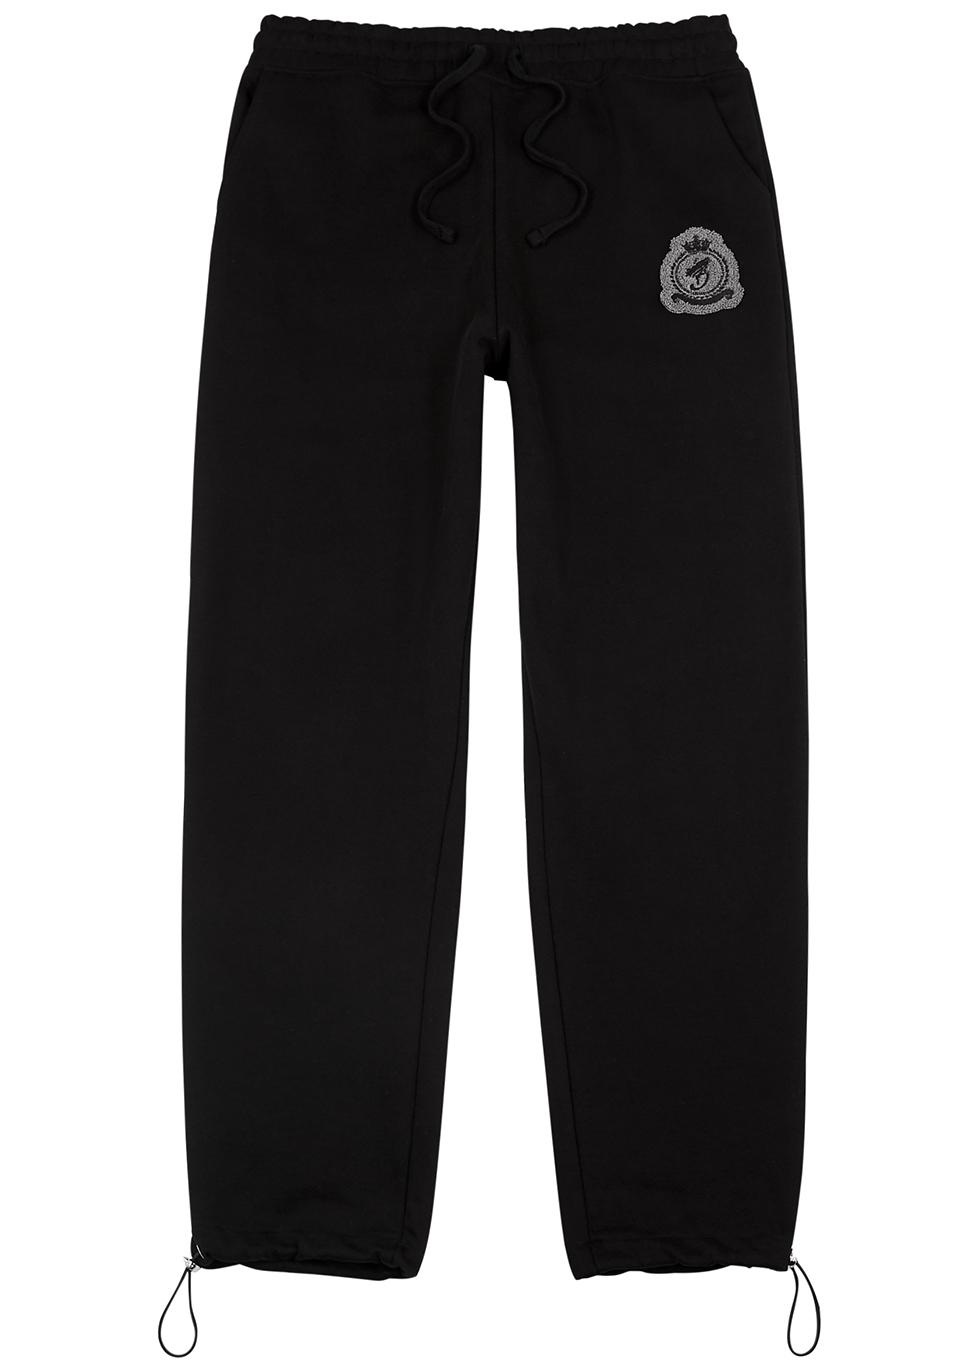 Black logo cotton sweatpants by BENJART